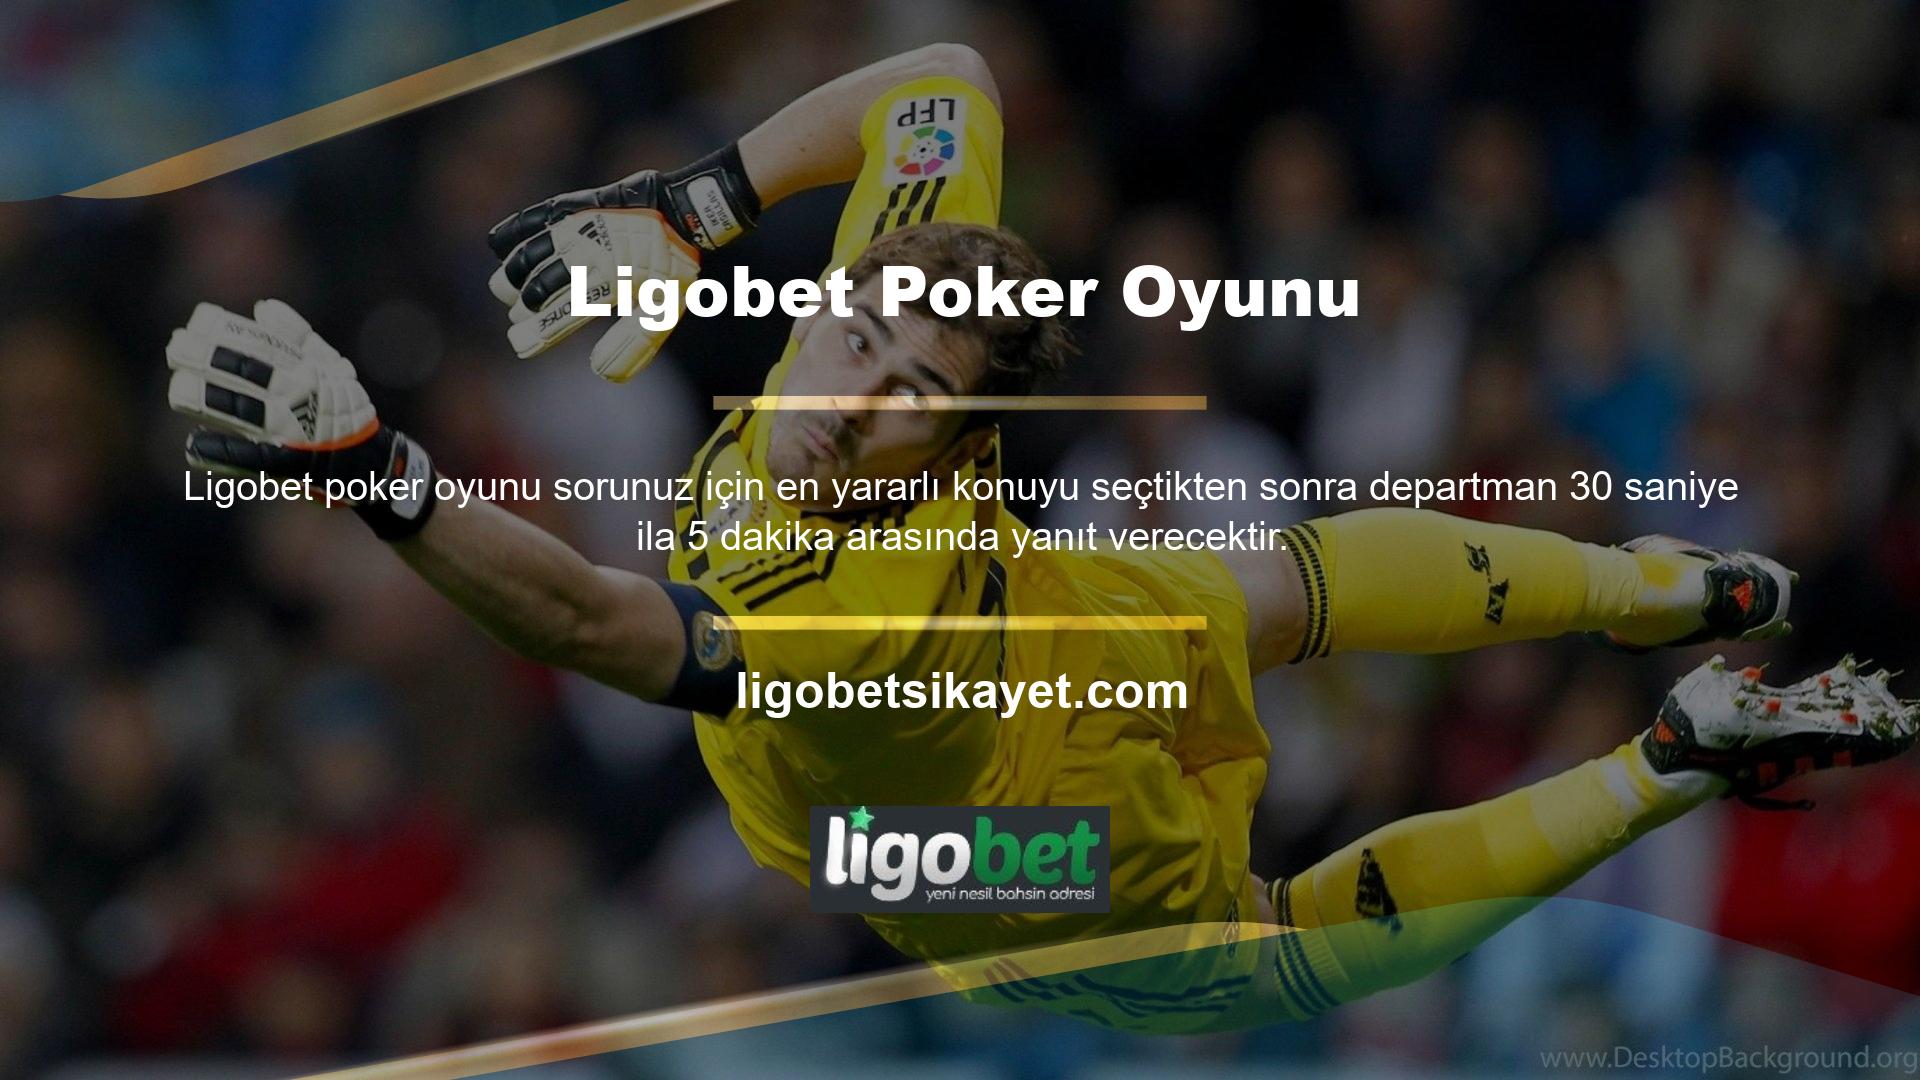 Ligobet poker oyunu iyi bilinen ve oldukça karlı bir casino oyunudur